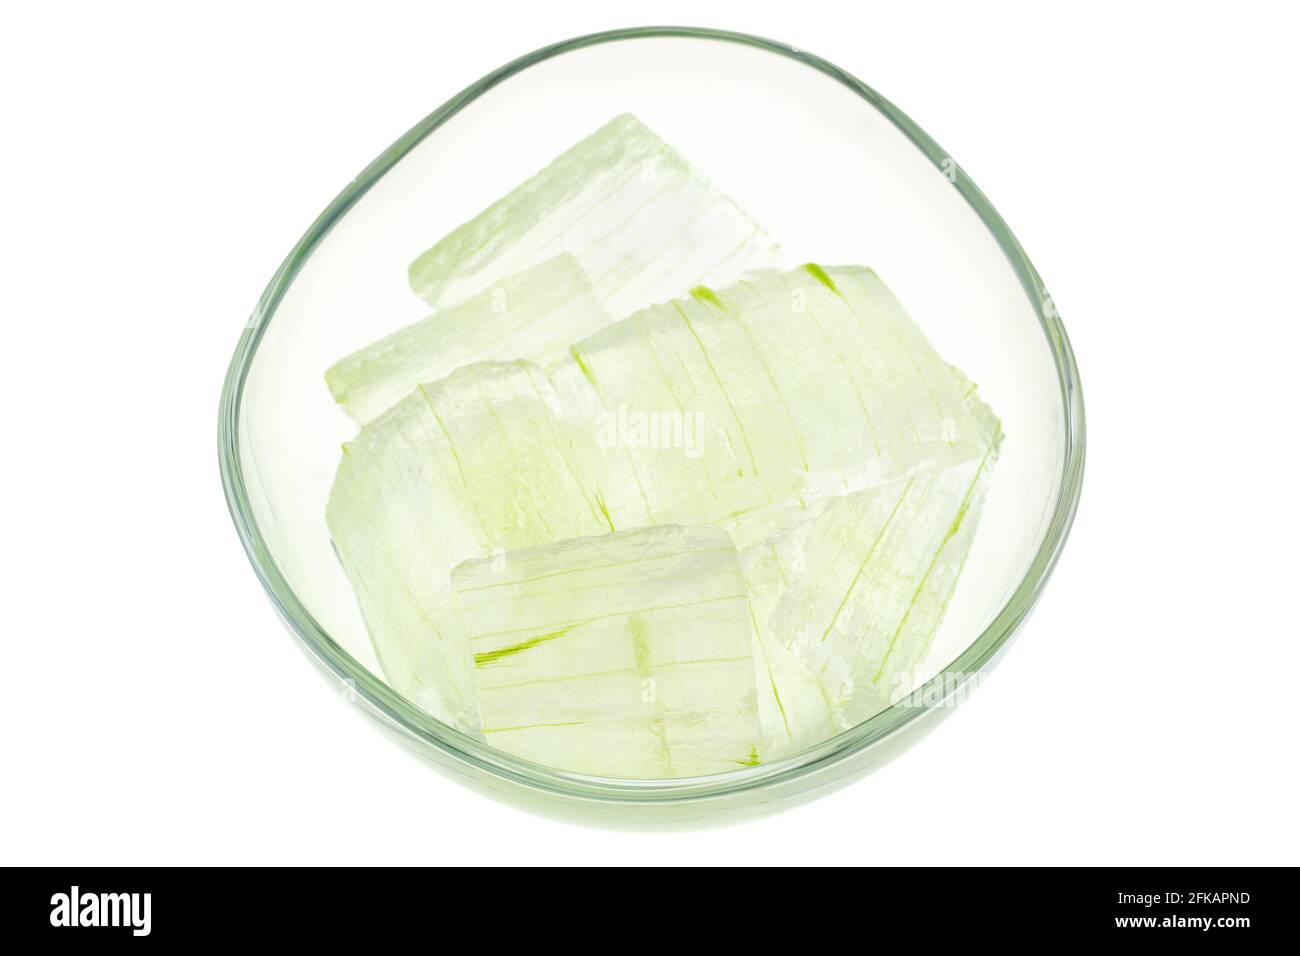 Un bol en verre rempli d'Aloe vera fraîchement cueilli, épluché et coupé en morceaux isolés sur blanc. L'Aloe Vera frais est un remède naturel pour les relies de coups de soleil Banque D'Images